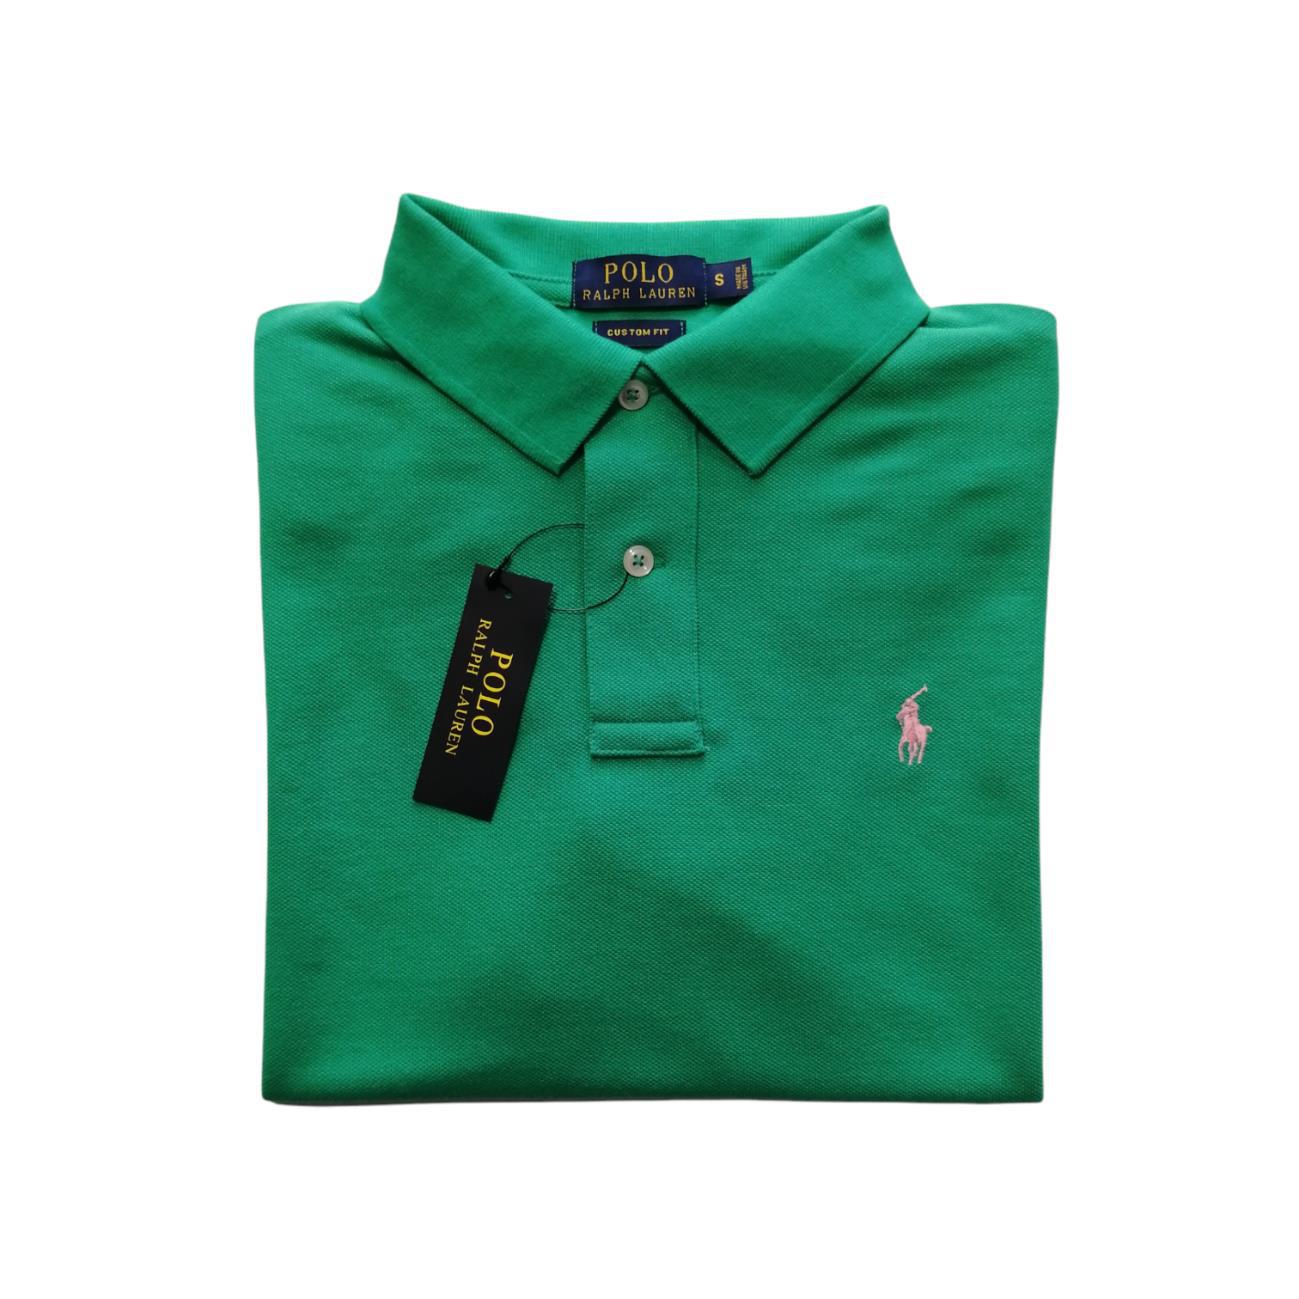 Camiseta tipo polo manga corta color verde Polo Ralph Lauren